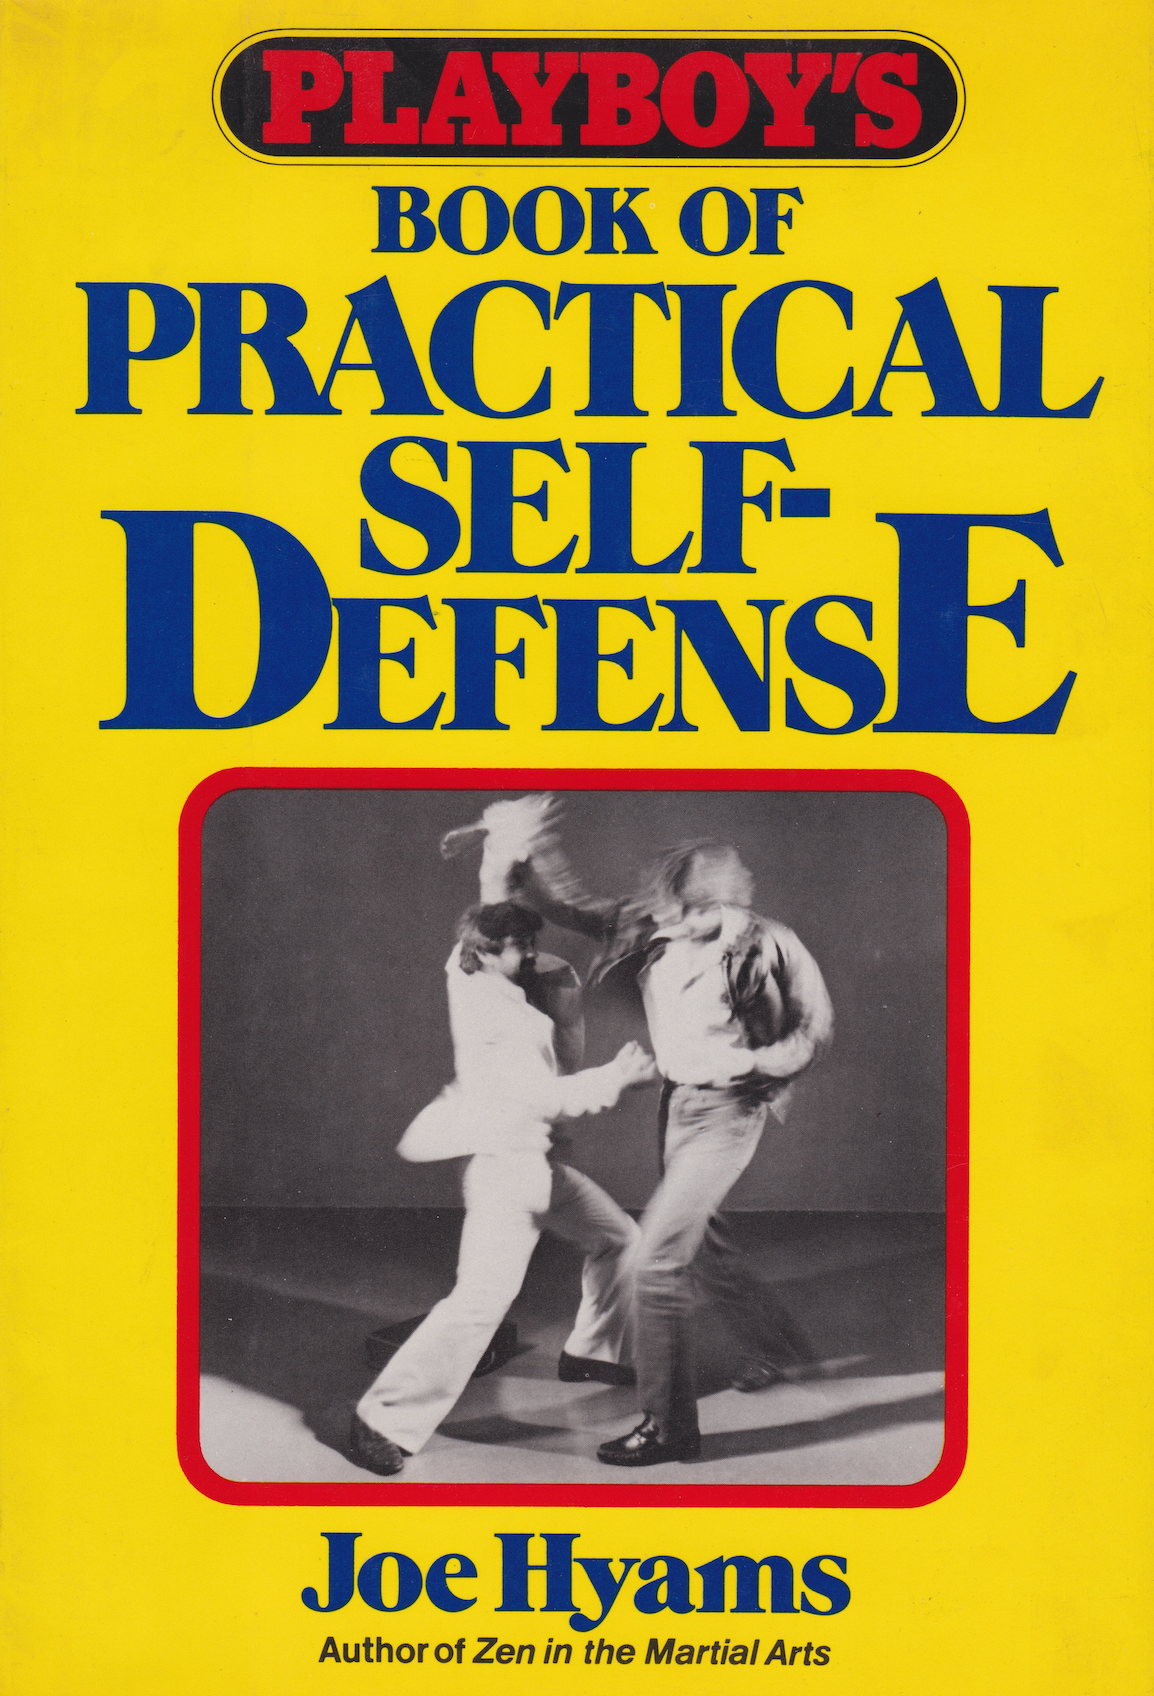 Libro de Playboy sobre defensa personal práctica de Joe Hyams (tapa dura) (usado)